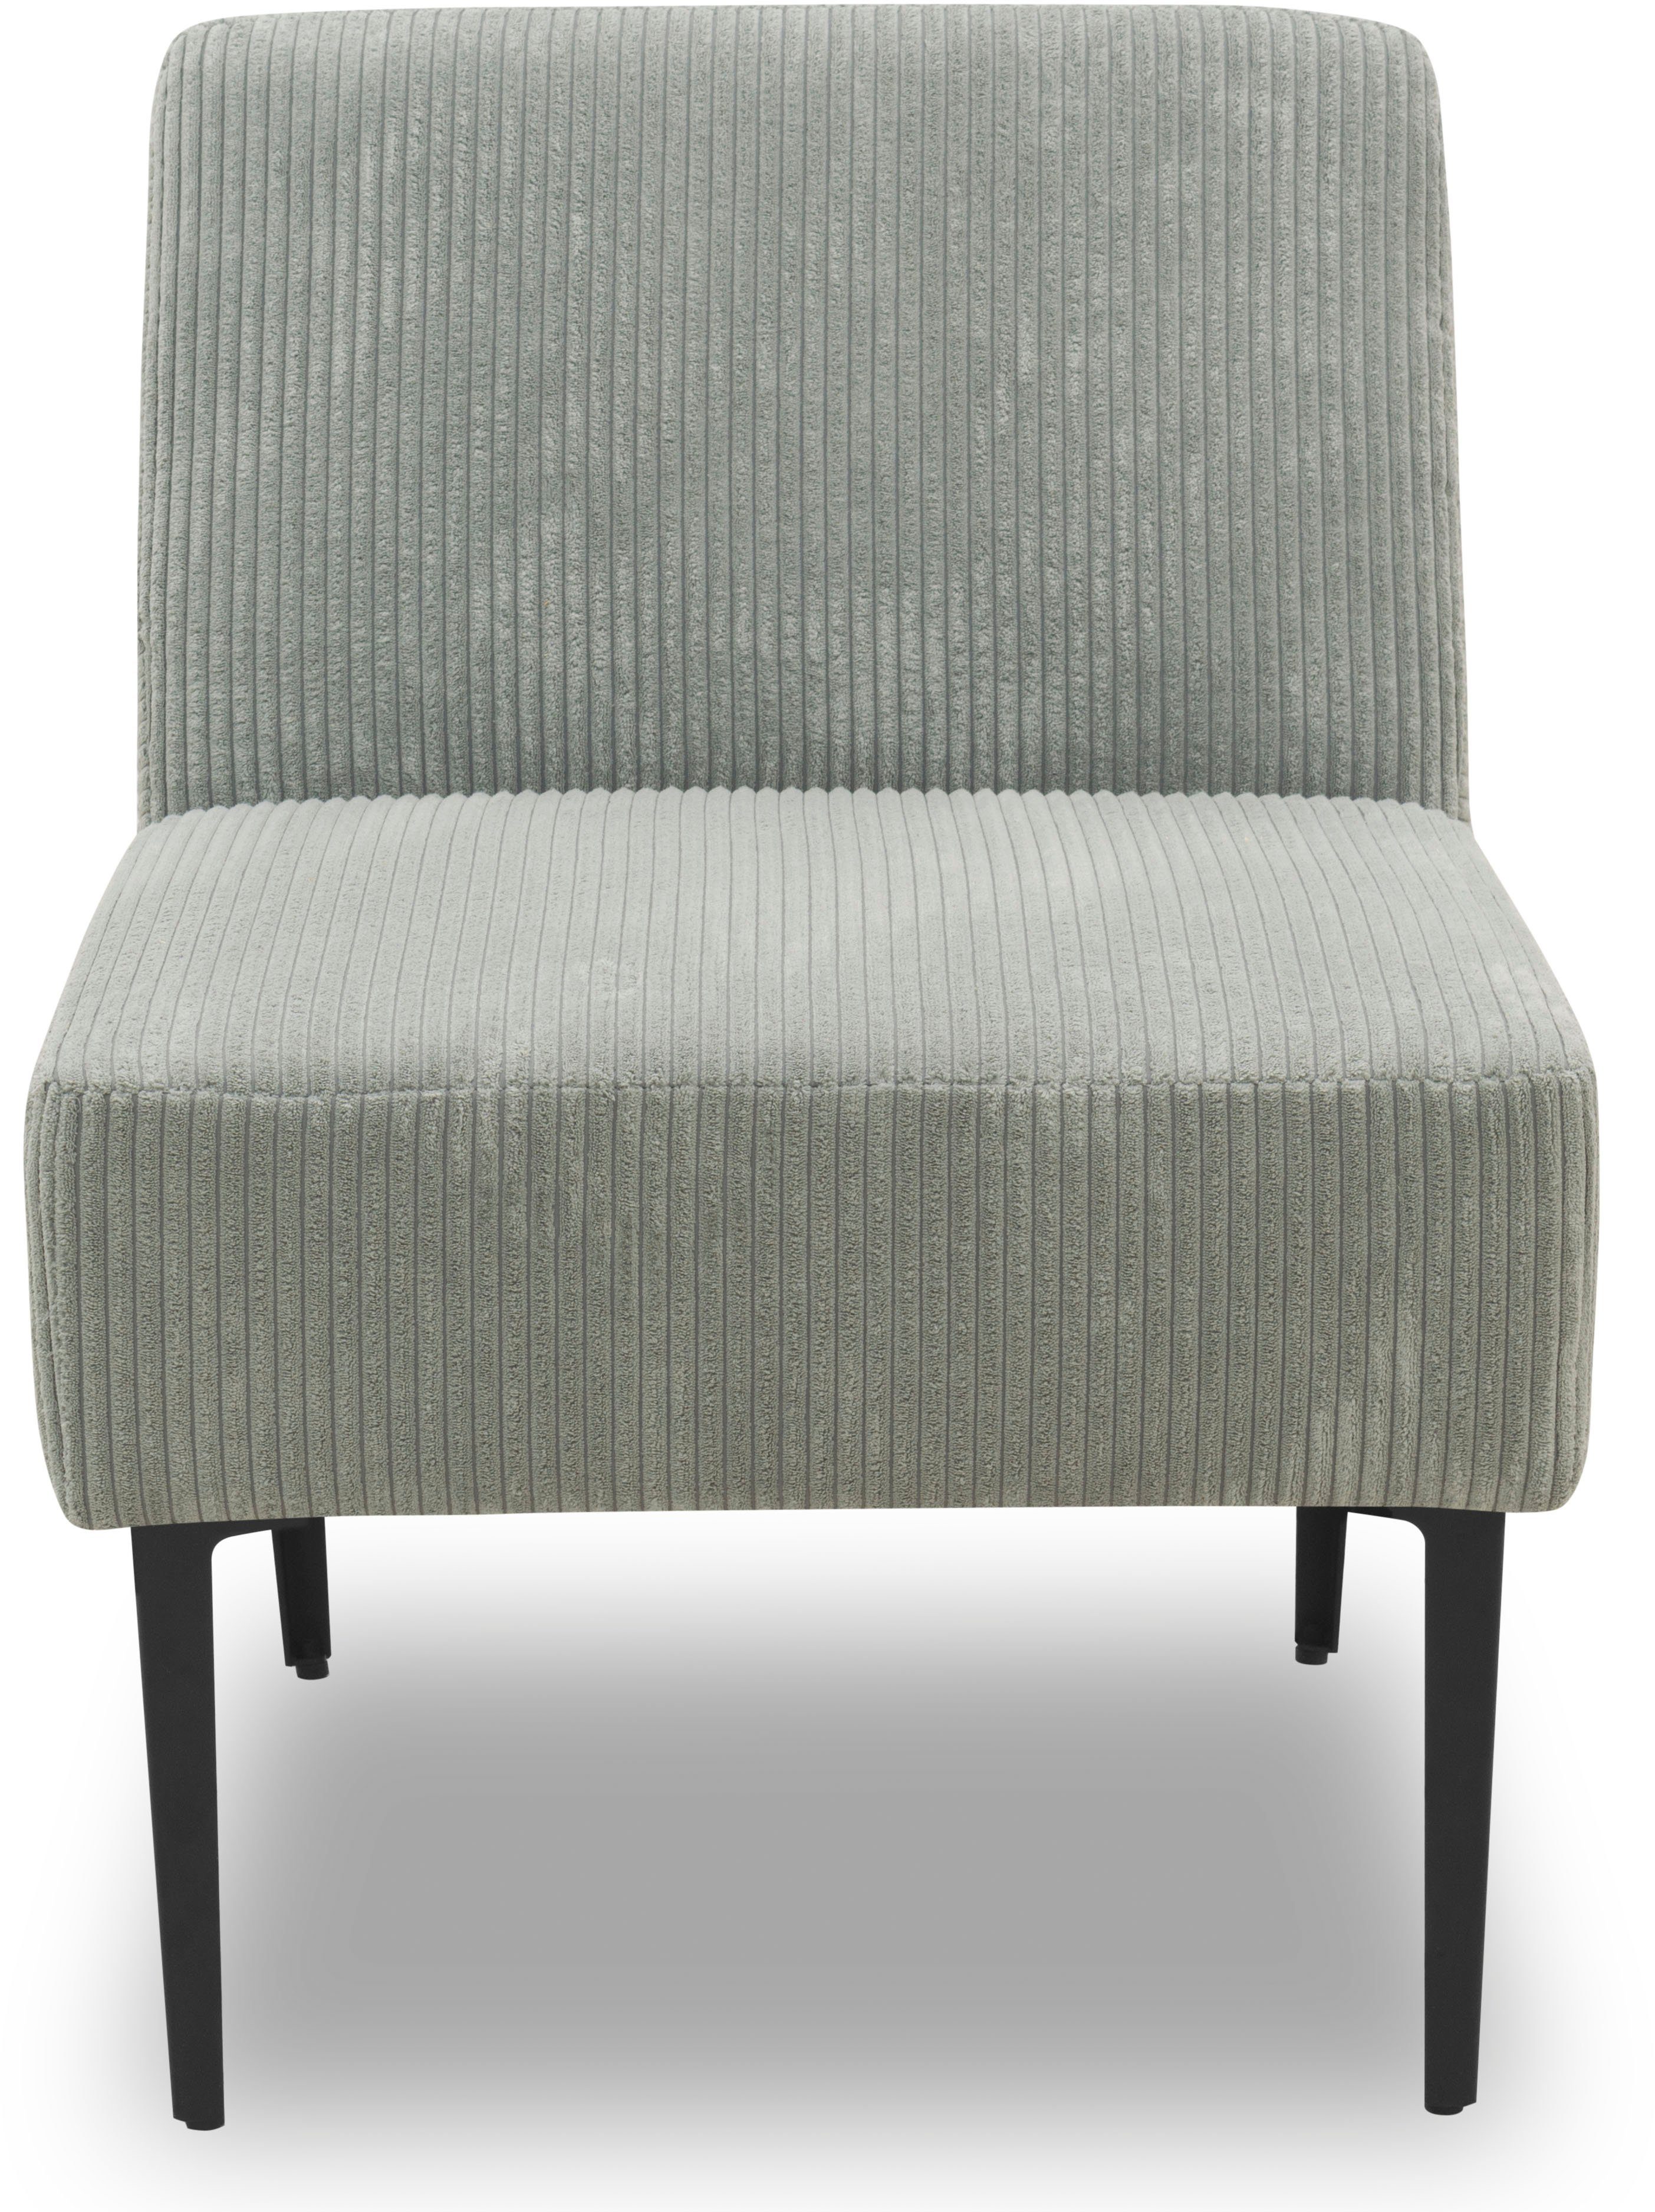 DOMO collection Sessel 700010, für individuelle Zusammenstellung eines persönlichen Sofas hellgrau